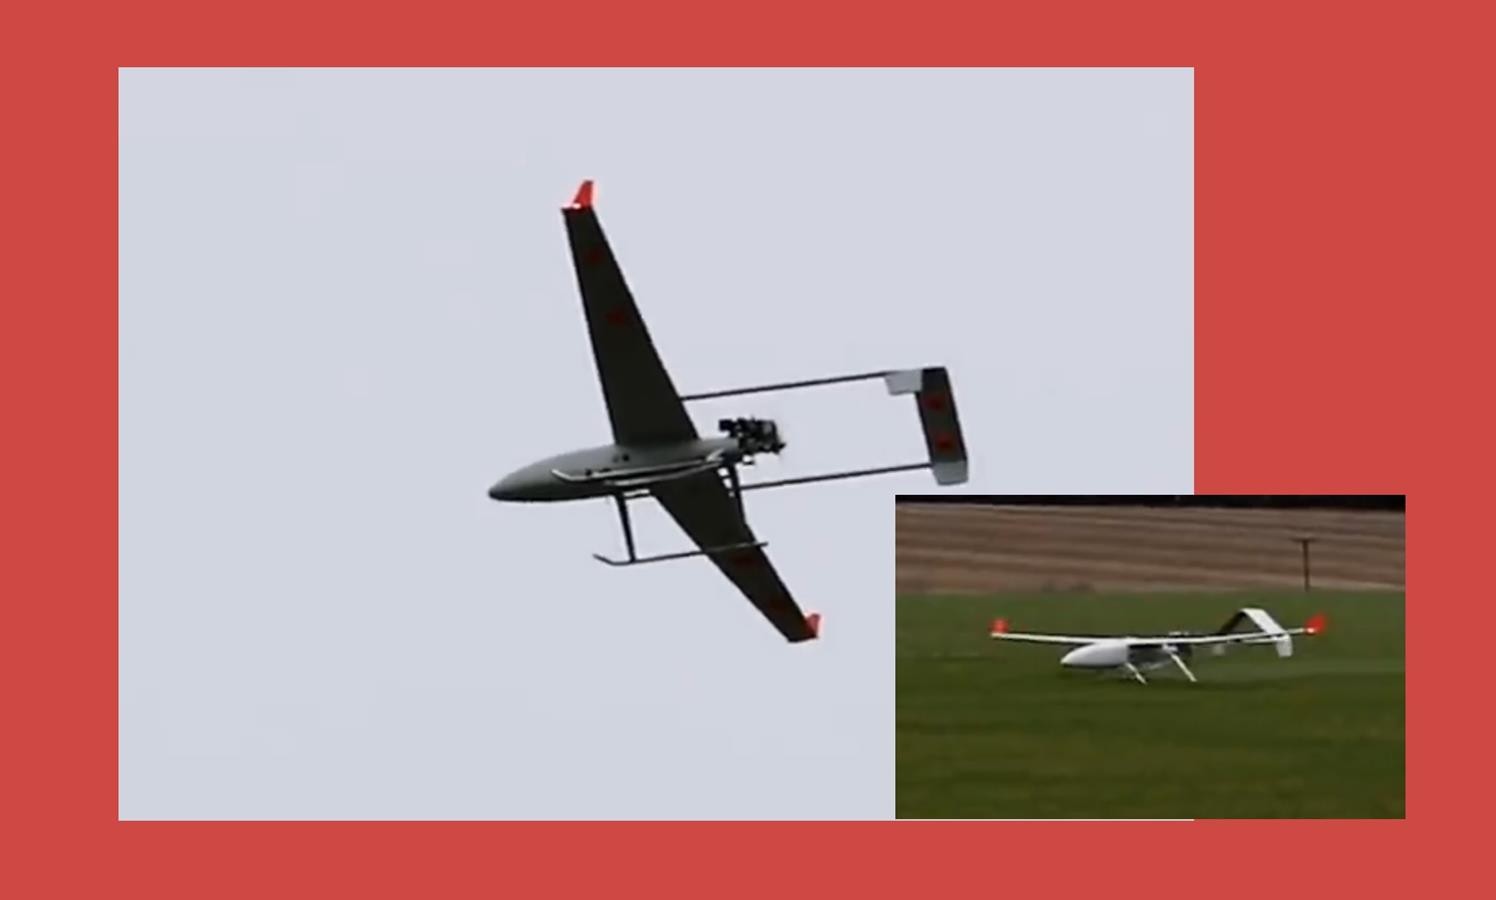 Pierwszy dron zasilany syntetycznym paliwem,Lotnictwo brytyjskie wspomogli naukowcy z USA, dron zasilany syntetycznym paliwem,